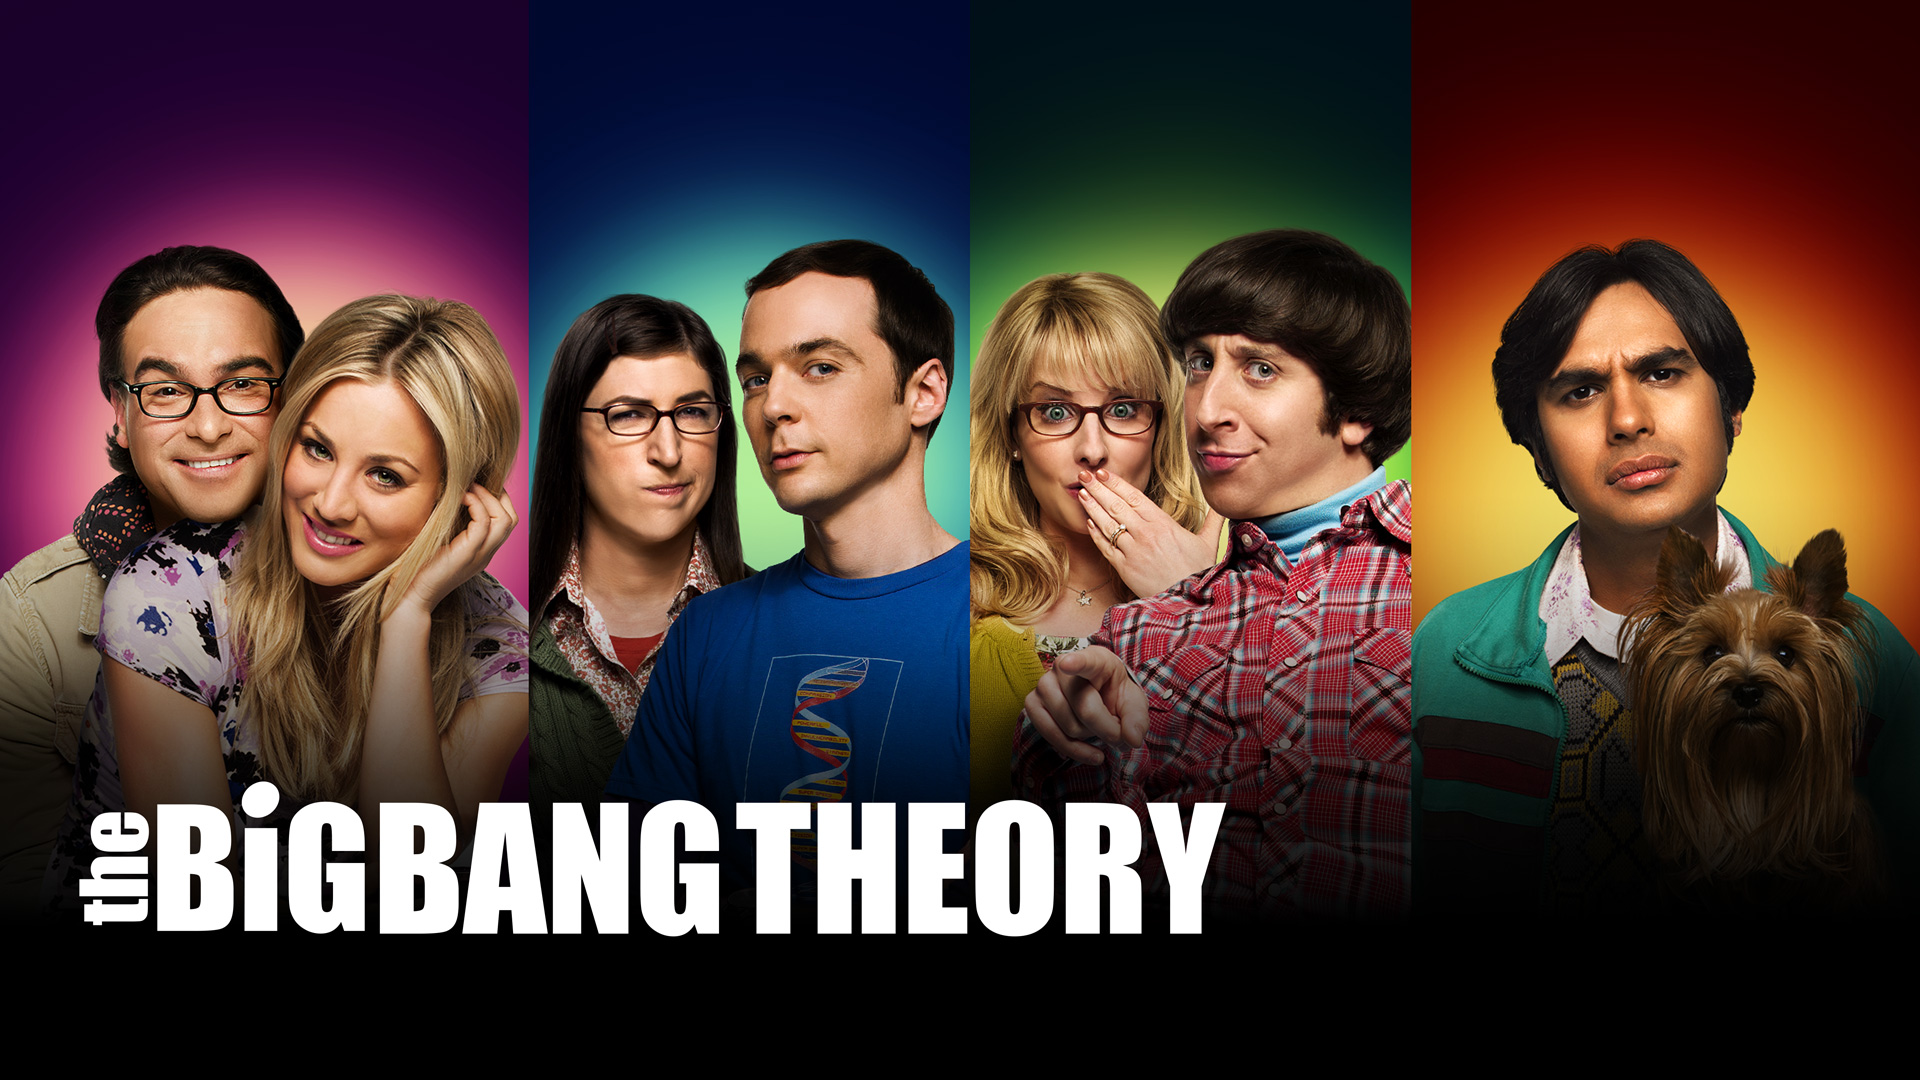 the big bang theory wallpaper,people,social group,youth,fun,movie